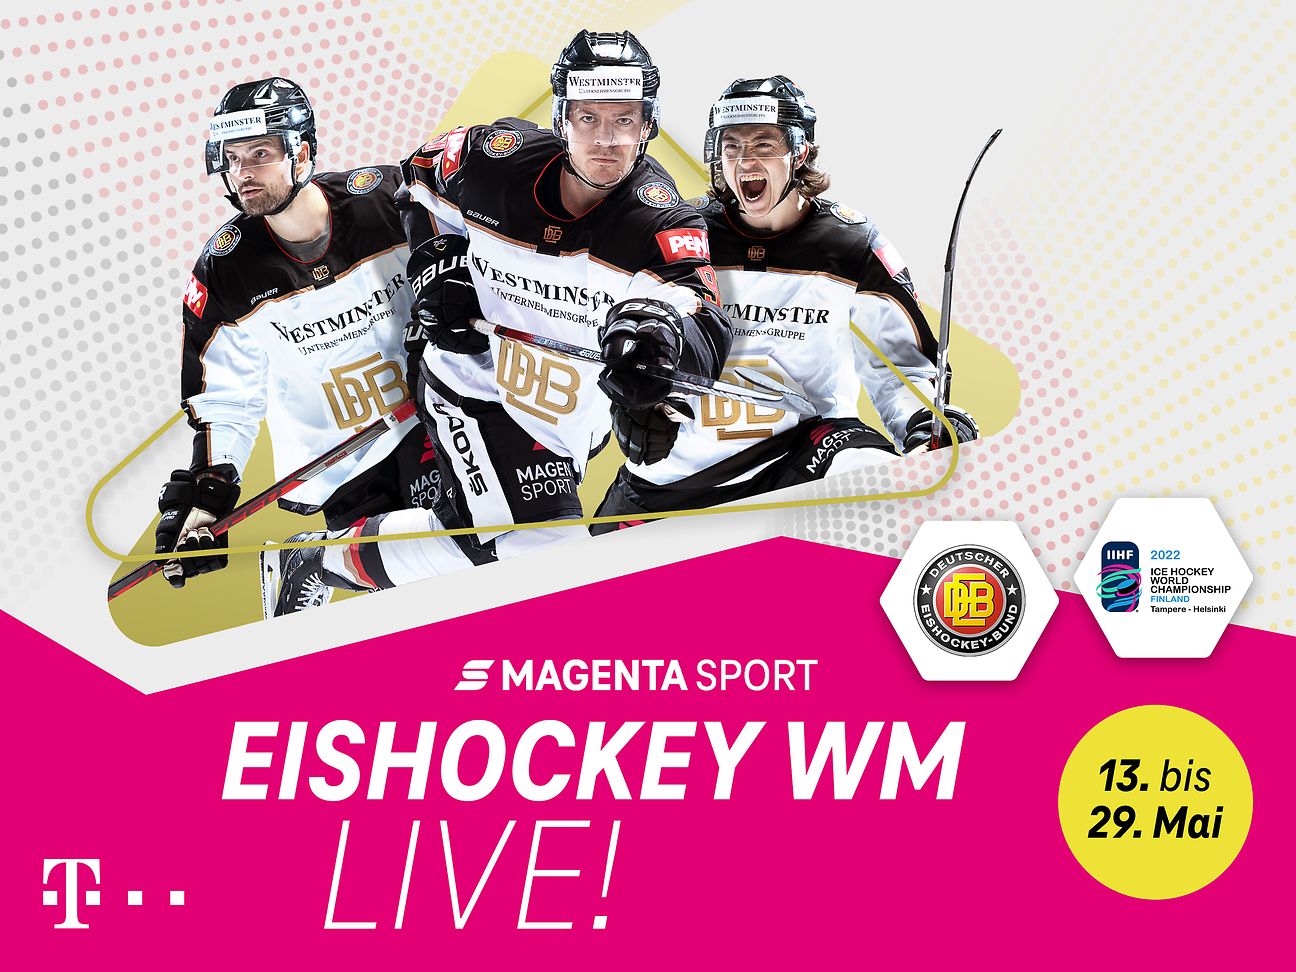 Eishockey WM Telekom zeigt alle deutschen Spiele und die K.O.-Phase bei MagentaTV und MagentaSport Deutsche Telekom